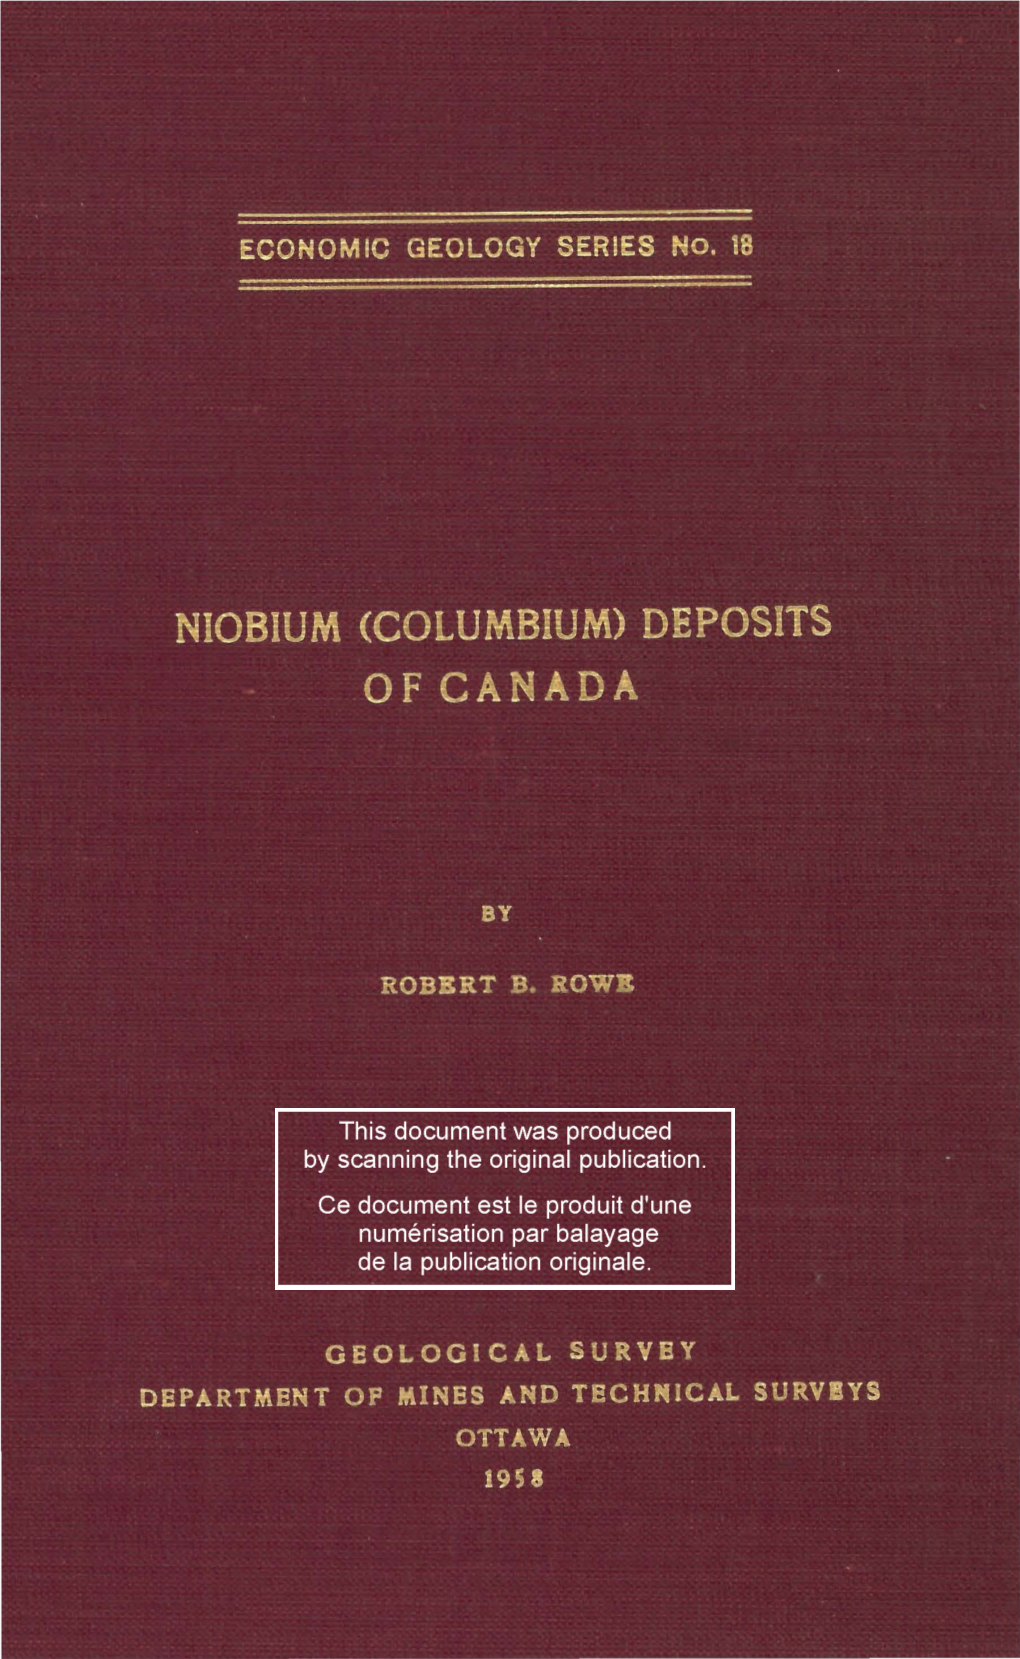 Niobium (Columbium) Deposits of Canada